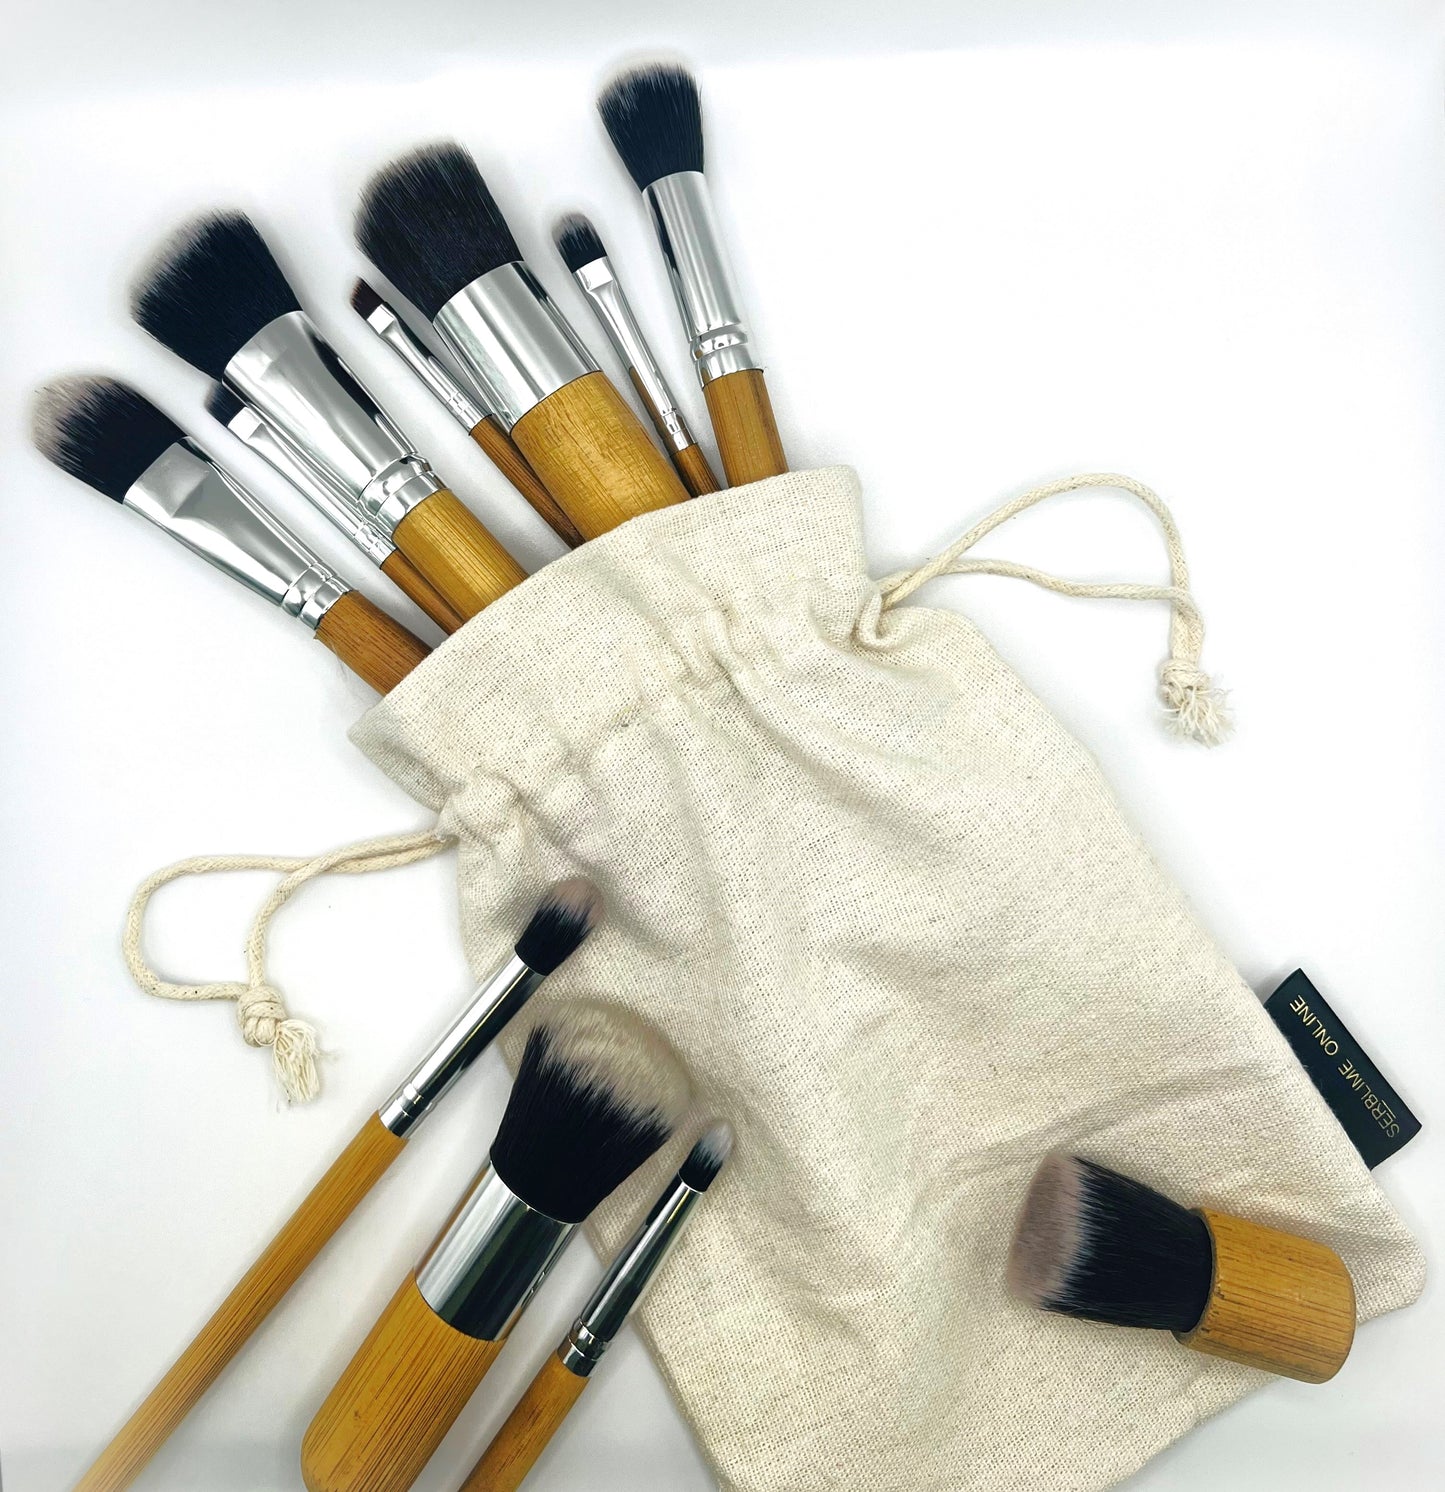 Bamboo Makeup Brush Set - 11 Pieces